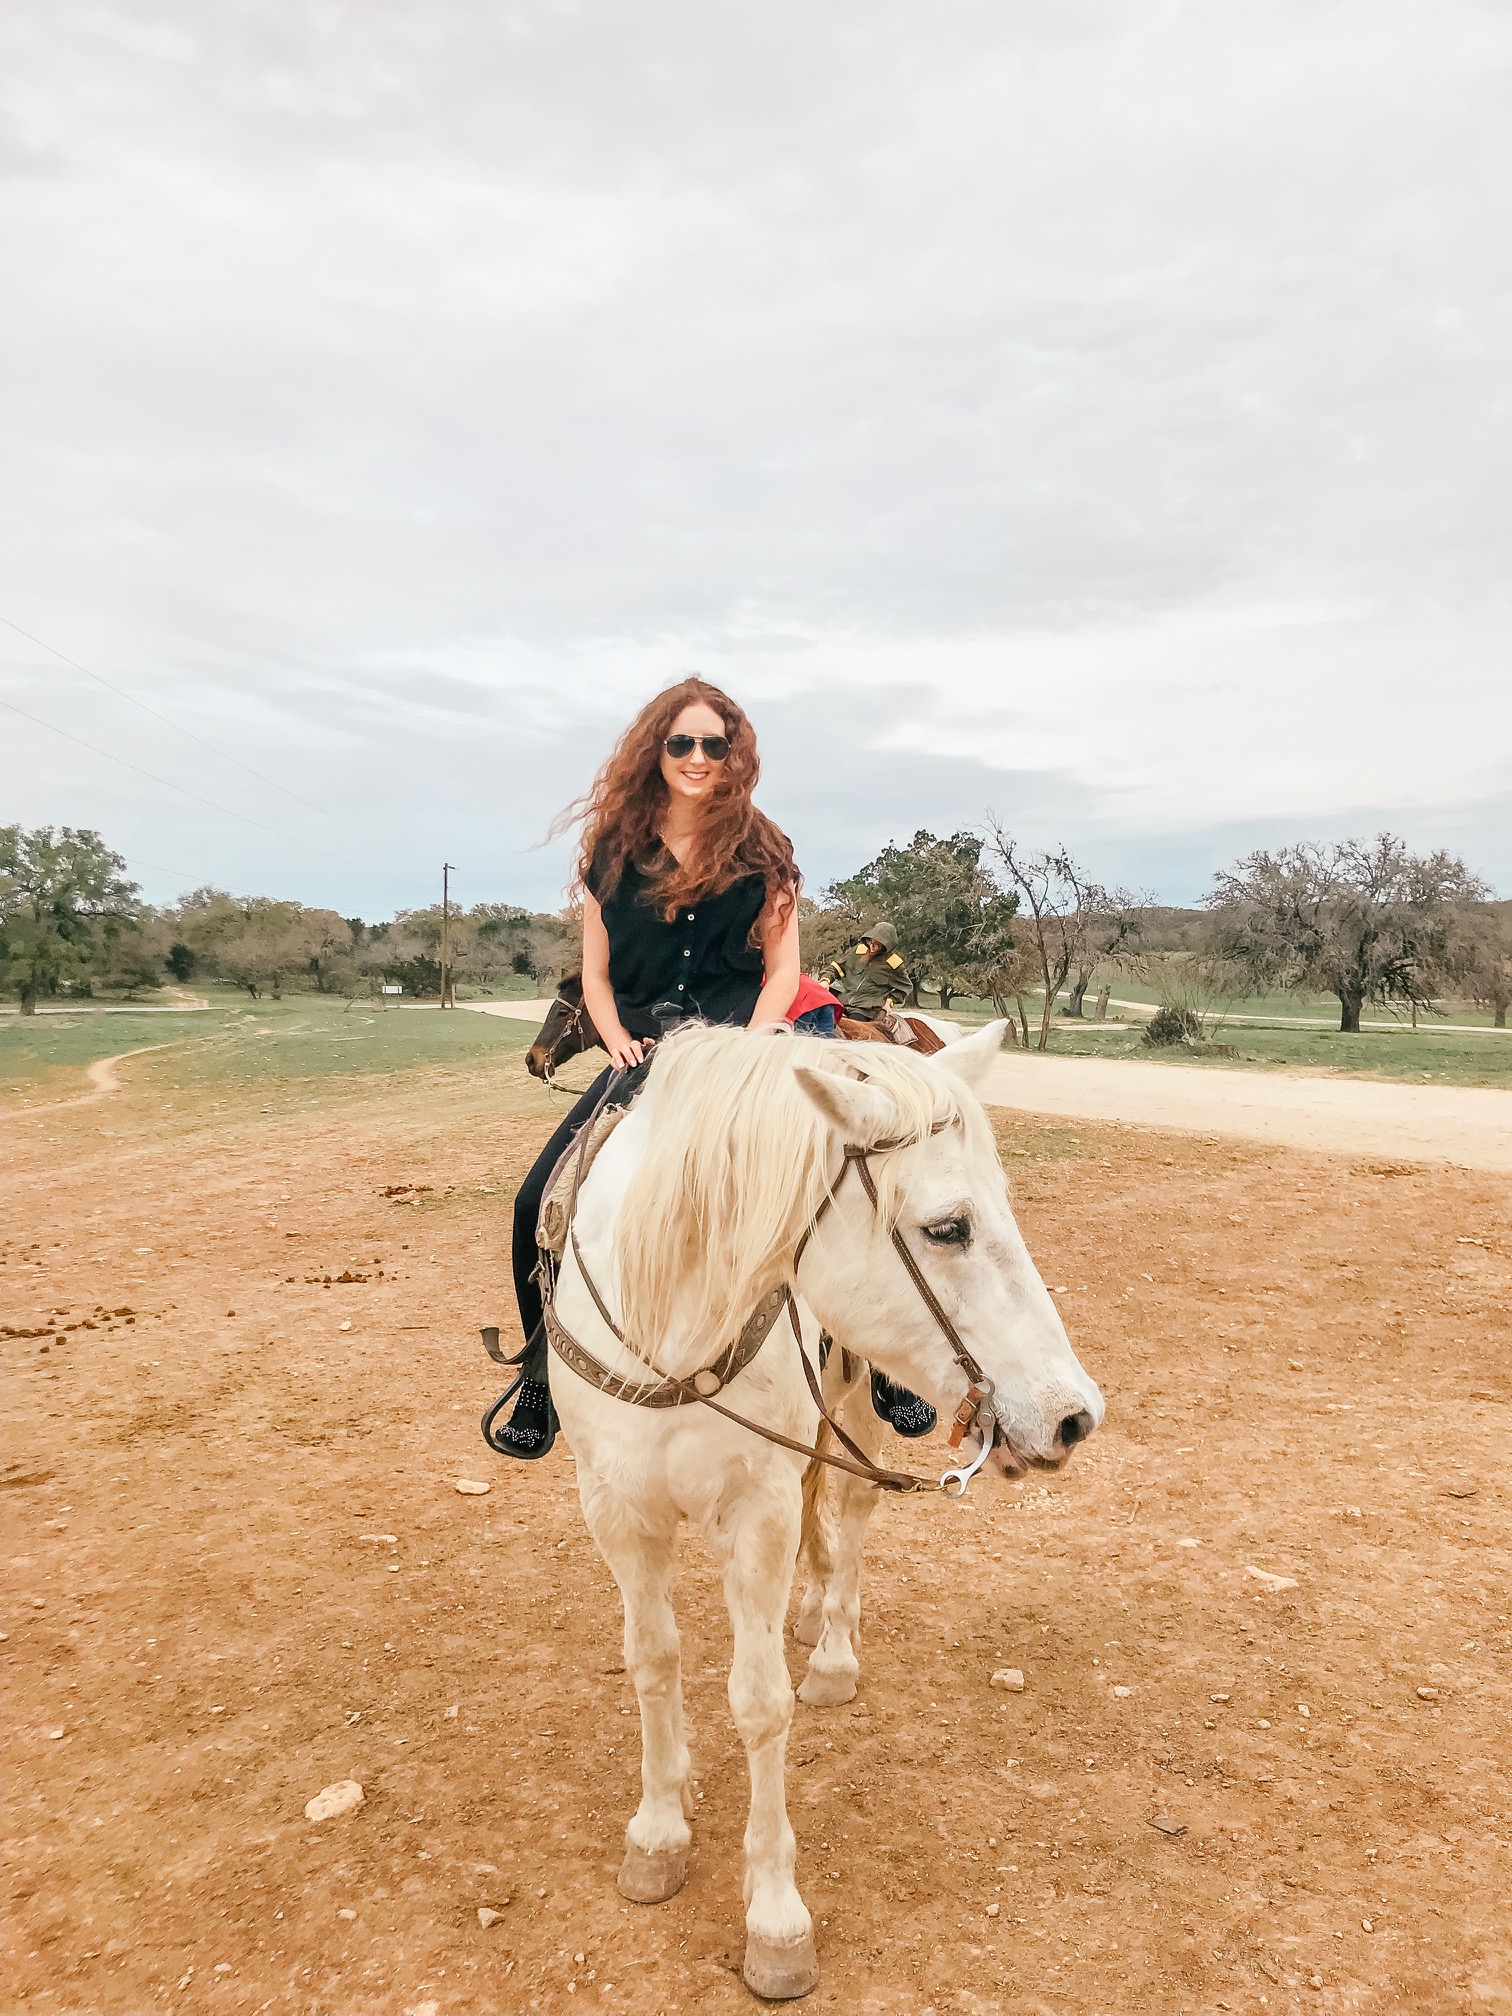 Mayan Dude Ranch Review Texas SF Travel Blogger Lorna Ryan Horses